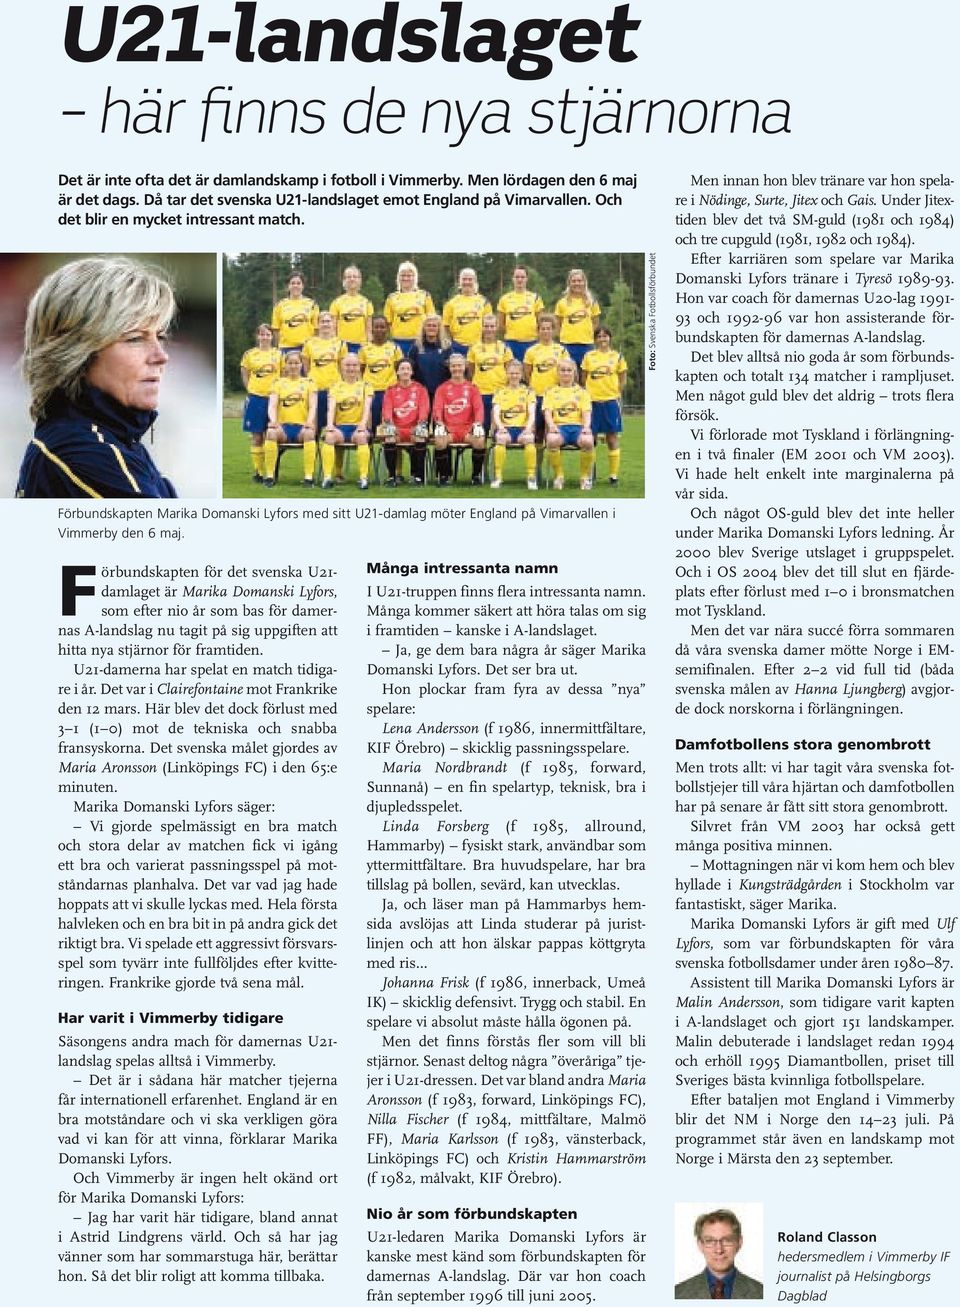 Förbundskapten för det svenska U21- damlaget är Marika Domanski Lyfors, som efter nio år som bas för damernas A-landslag nu tagit på sig uppgiften att hitta nya stjärnor för framtiden.